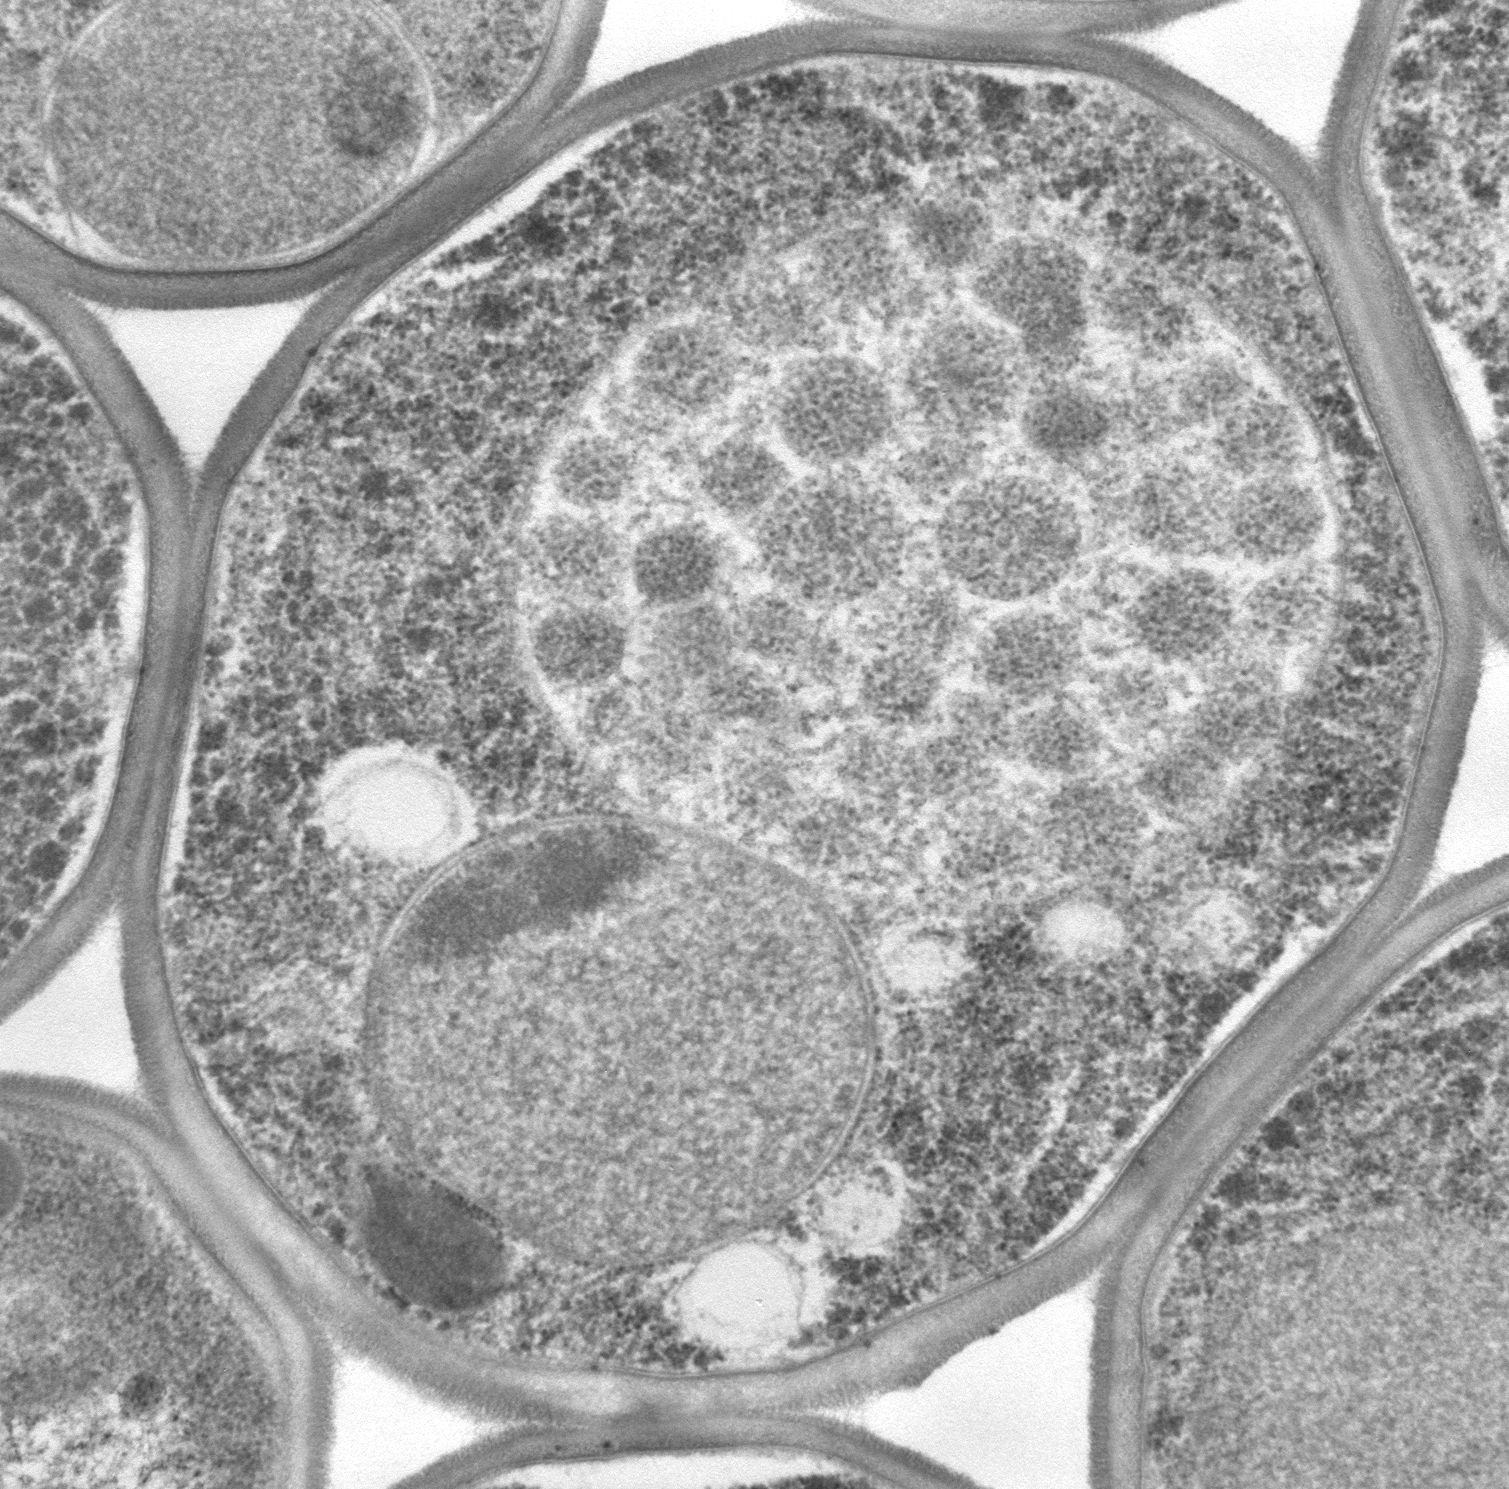 酵母のオートファジーを捉えた像。液胞（中央）のなかに、たくさんのオートファジックボディ（オートファジーによって作られた膜構造）が観察できる。私はこのオートファジックボディを生化学的手法を駆使して精製することに成功しています。